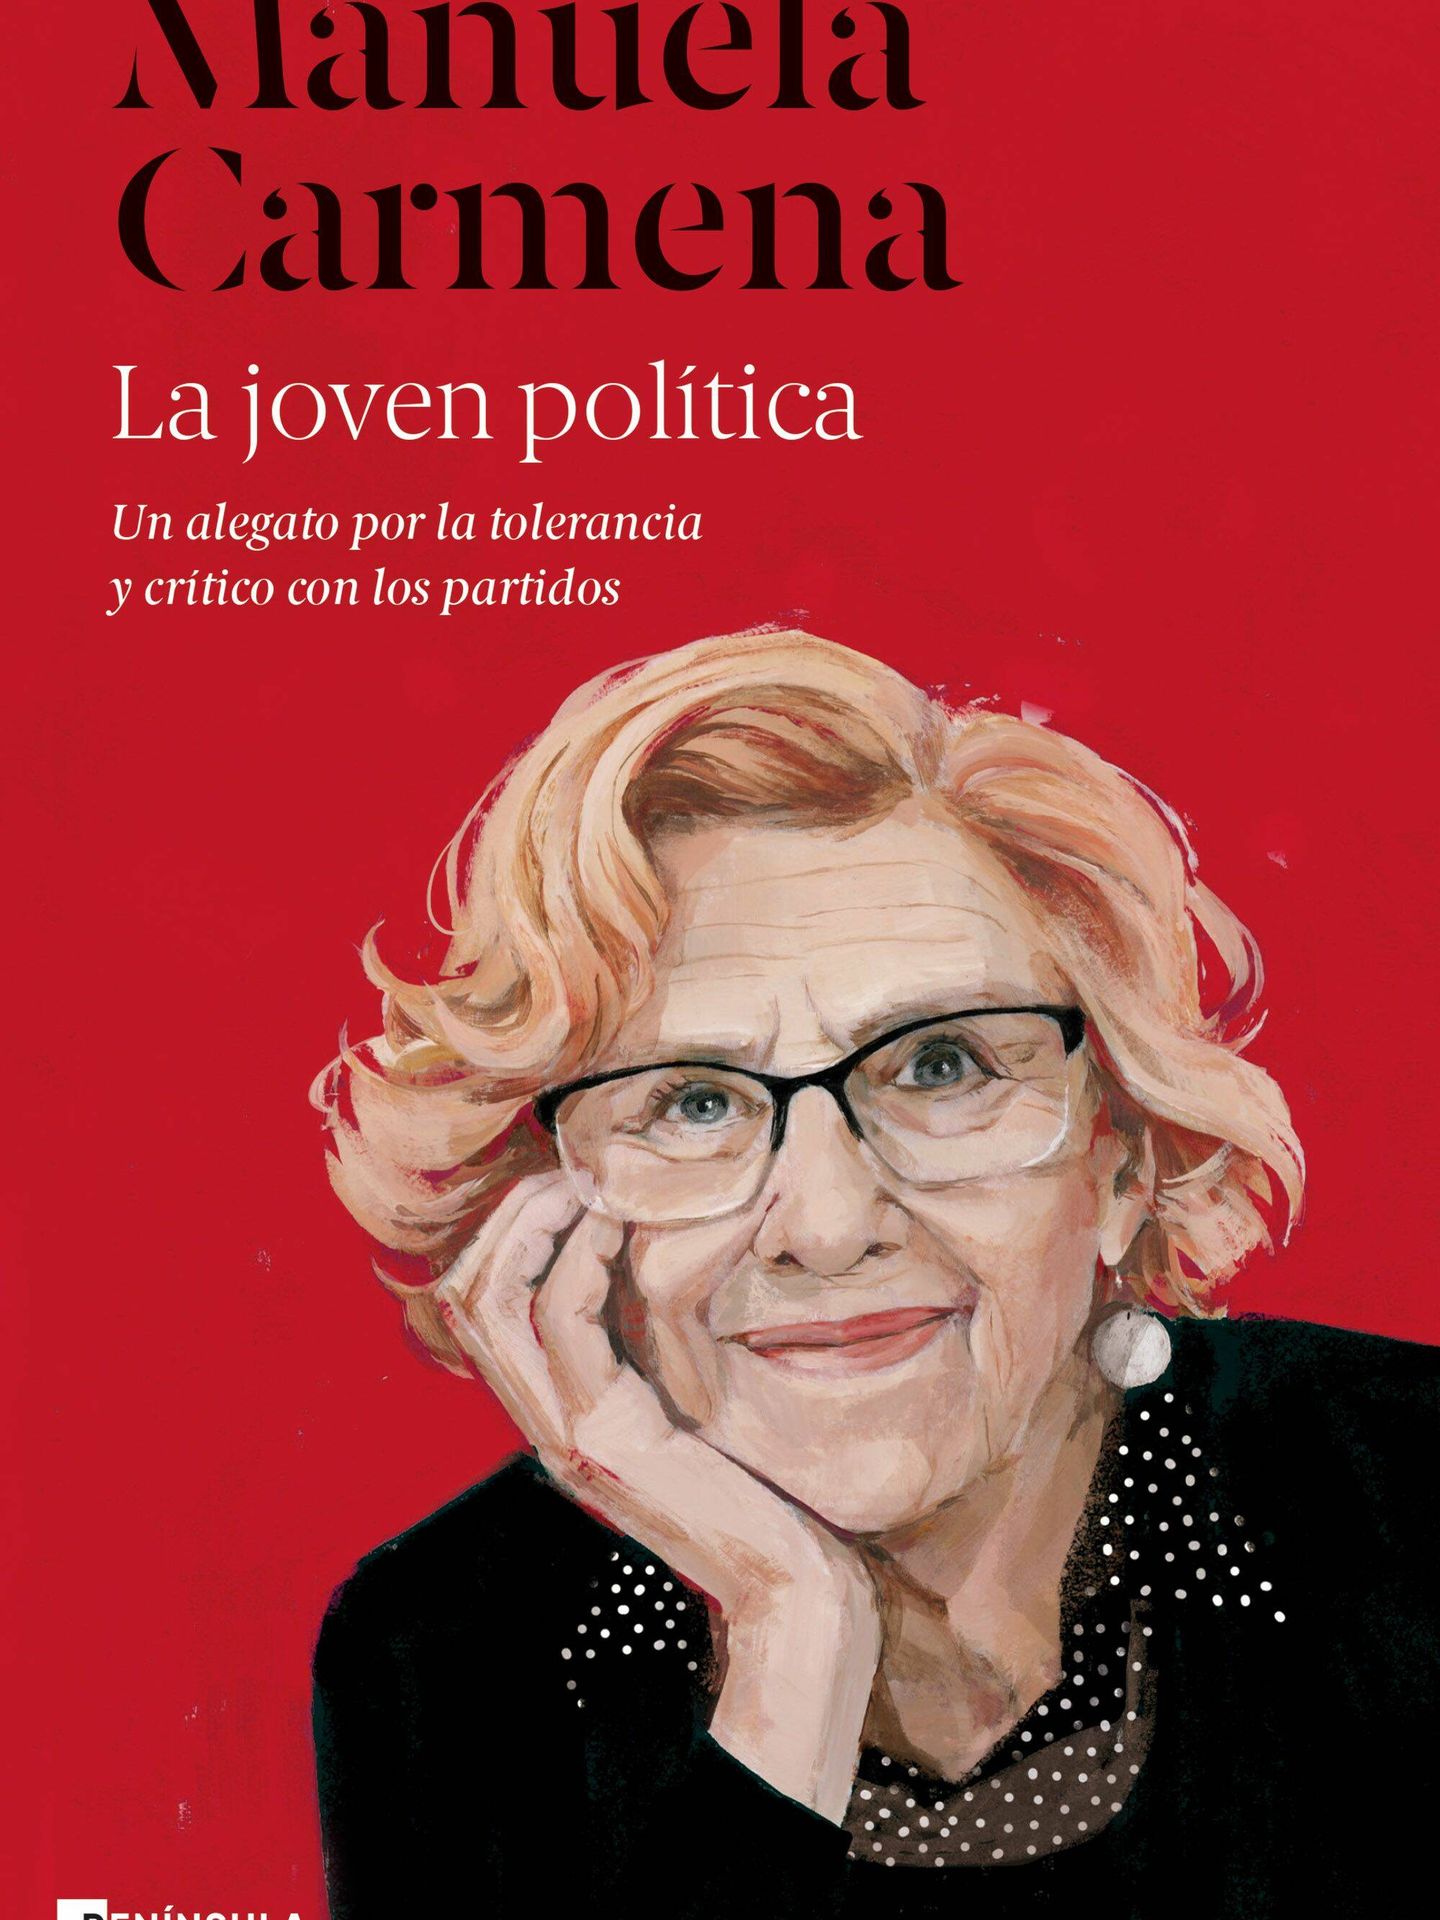 El nuevo libro de Manuela Carmen, 'La joven política'.